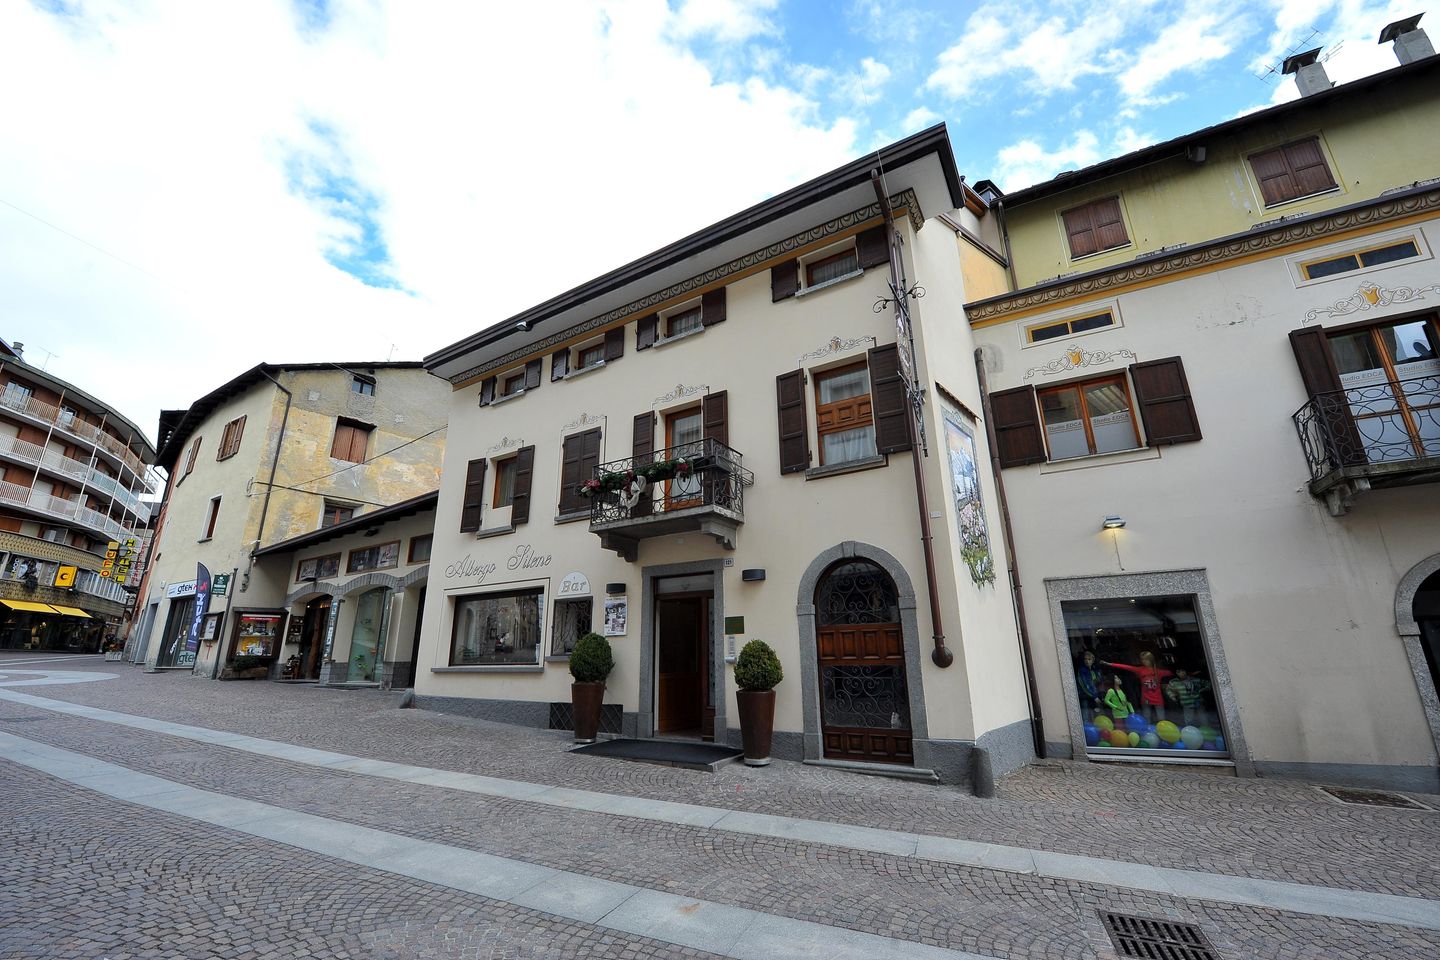 Hotel Silene - Bormio - Valtellina